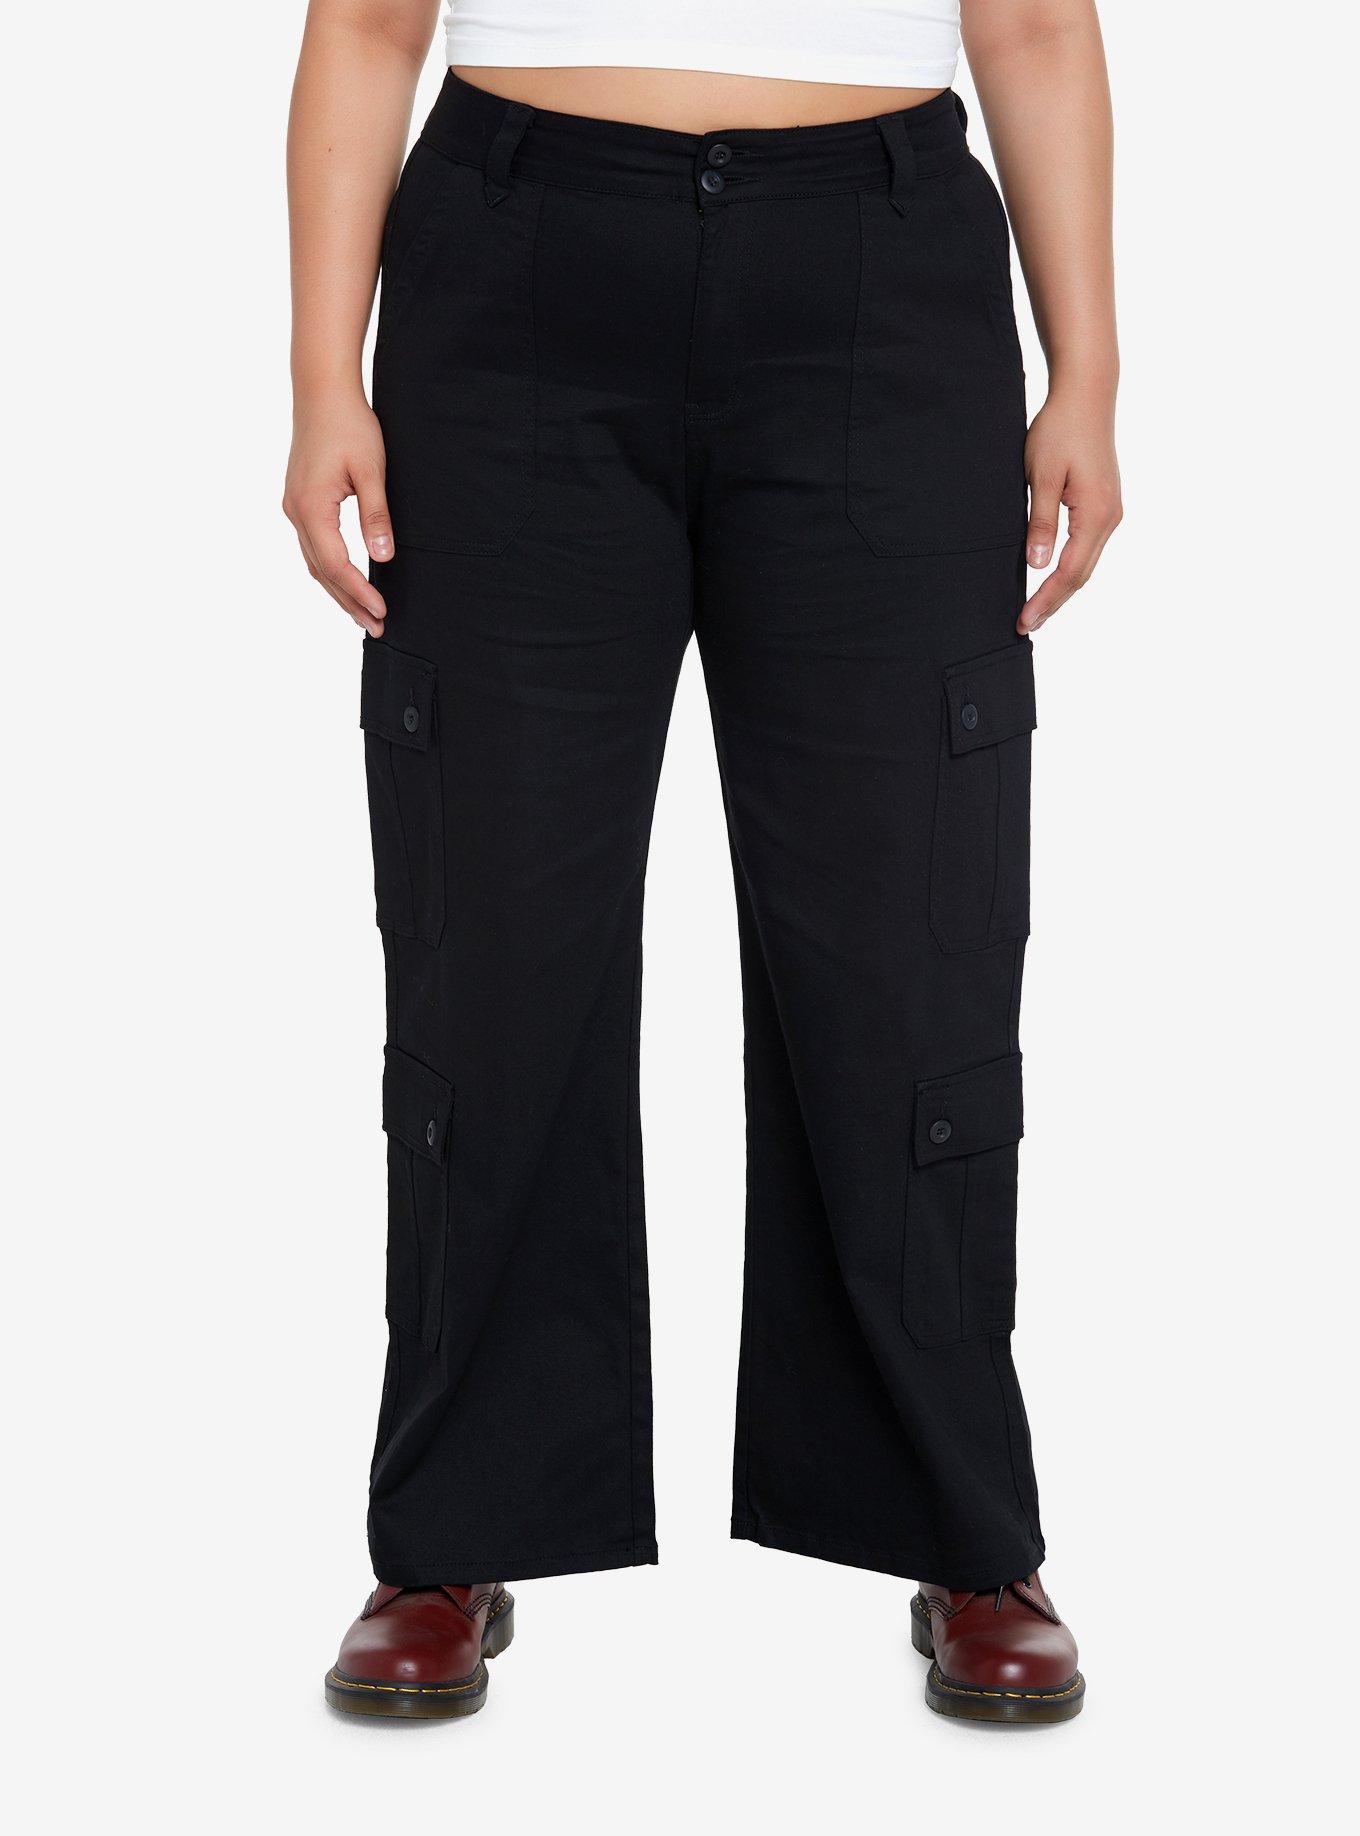 Plus Size Black Pants Pockets  Plus Size Black Cargo Pants